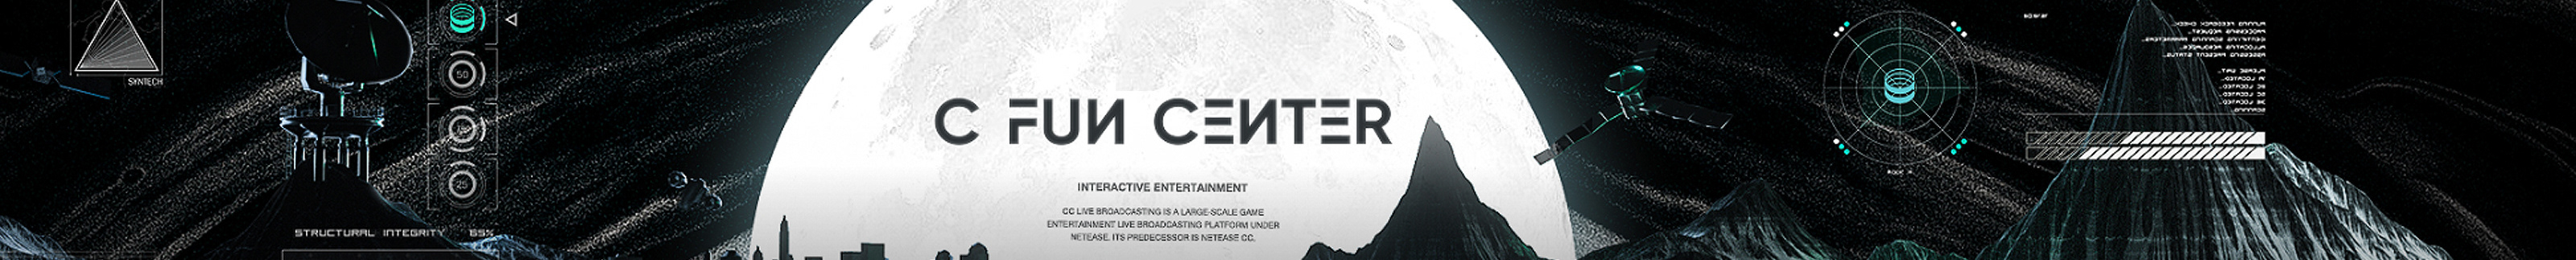 C Fun Center's profile banner